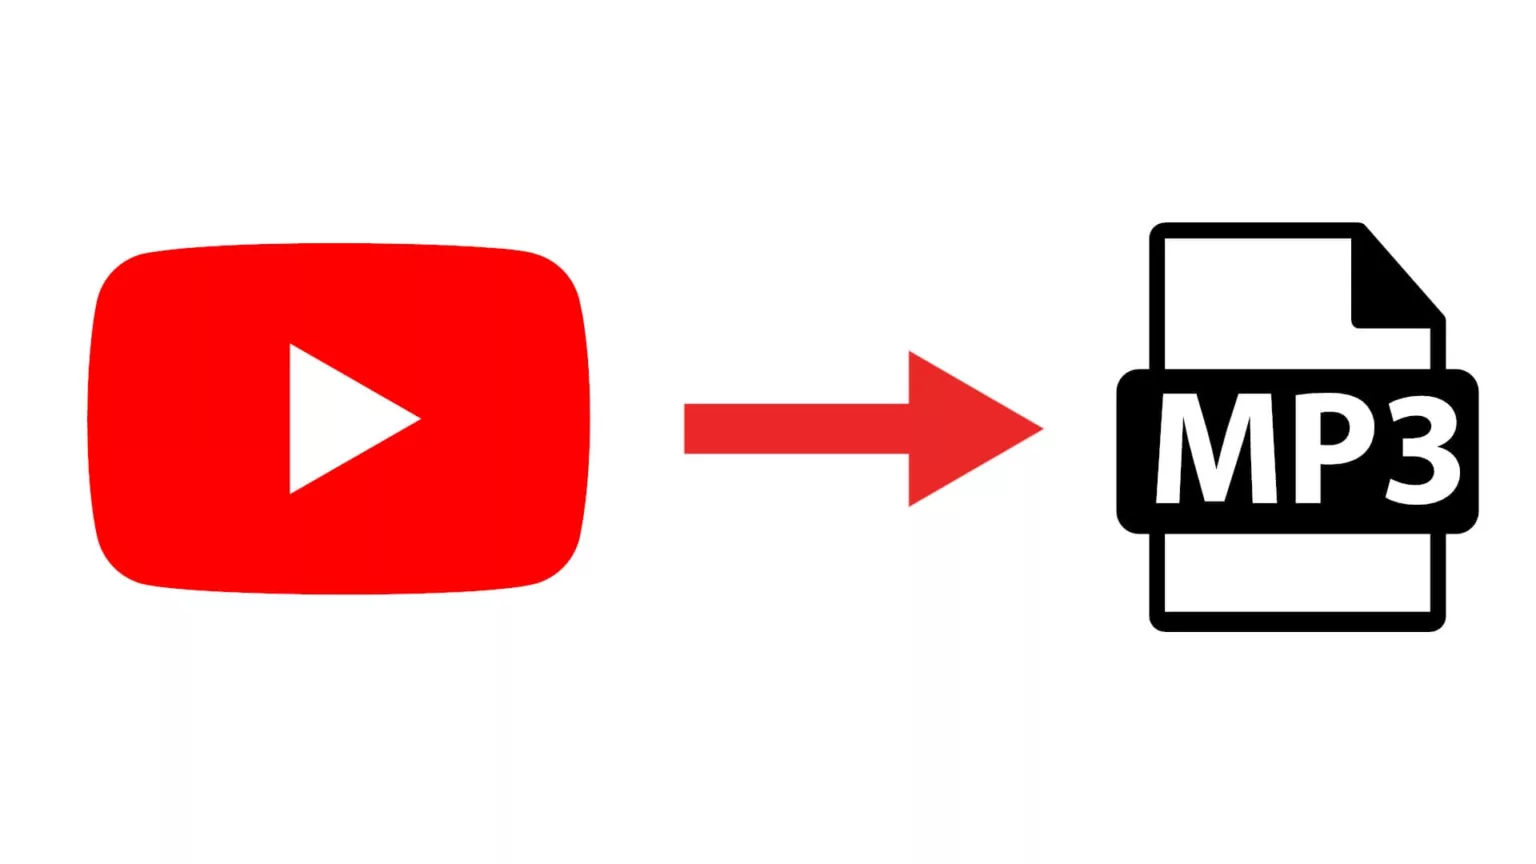 Cara Download Video YouTube ke MP3